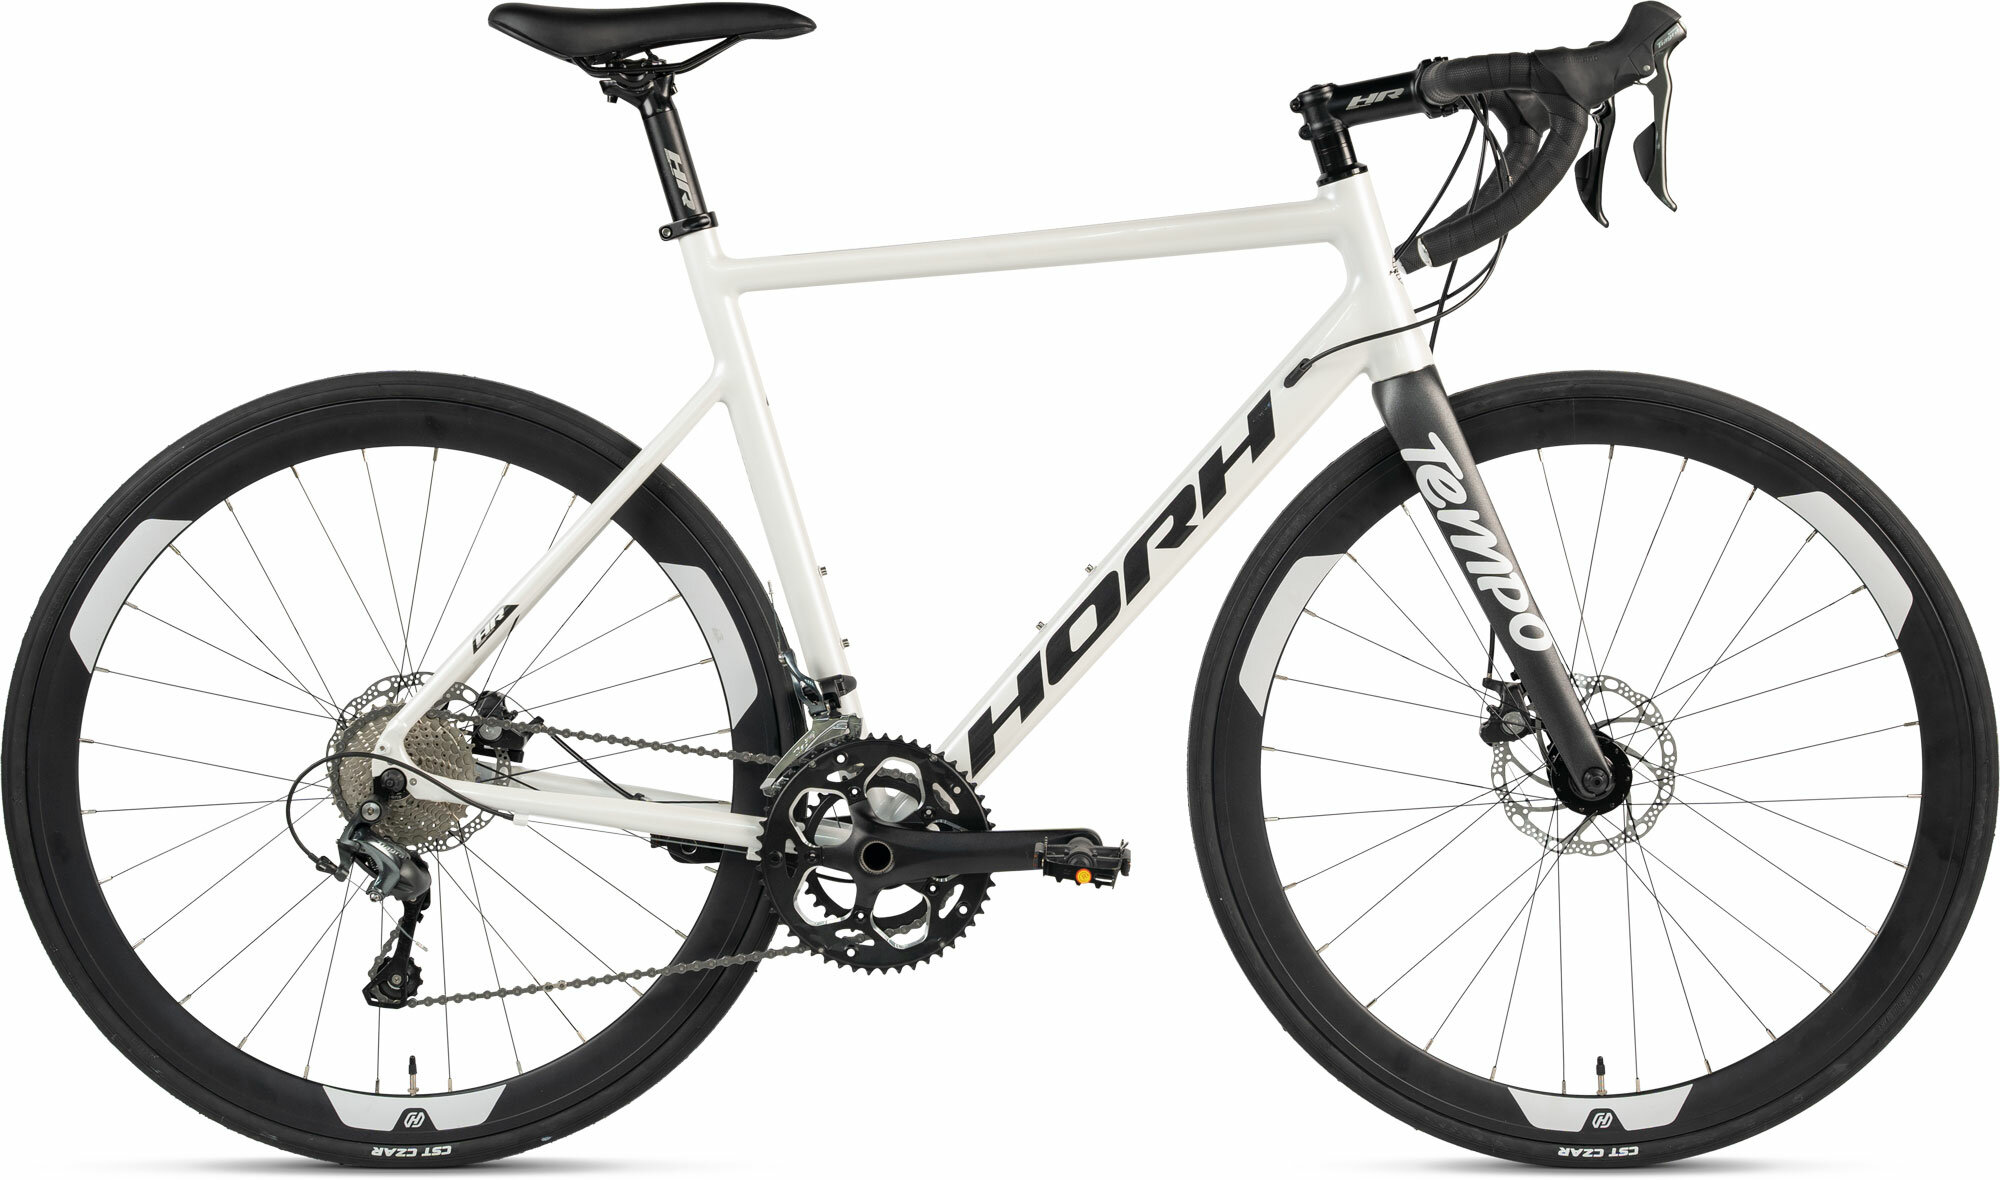 Велосипед Horh Tempo (2024), ригид, взрослый, мужской, алюминиевая рама, 20 скоростей, дисковые механические тормоза, цвет White-Black, белый/черный цвет, размер рамы 55 см, для роста 175-185 см